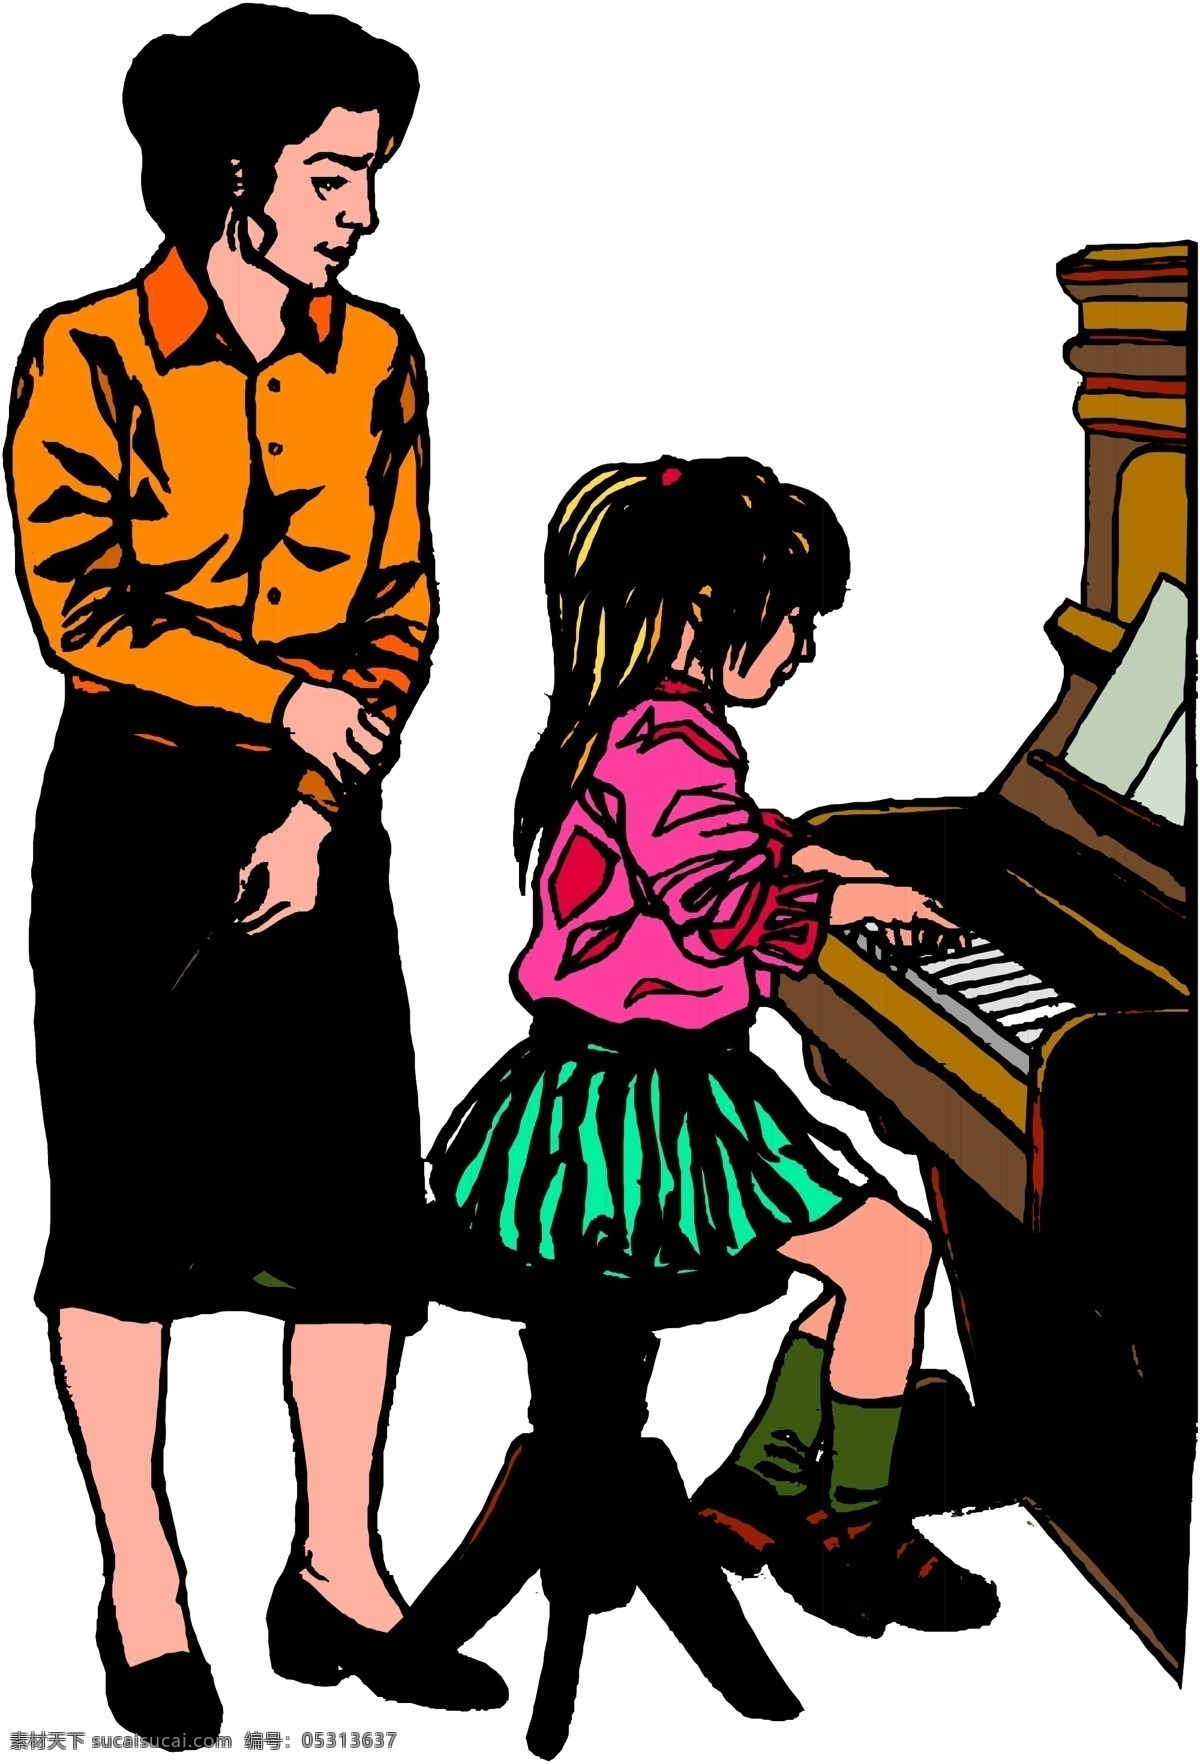 钢琴 课 教育 上课 矢量老师 矢量学生 学生 钢琴课 矢量图 其他矢量图